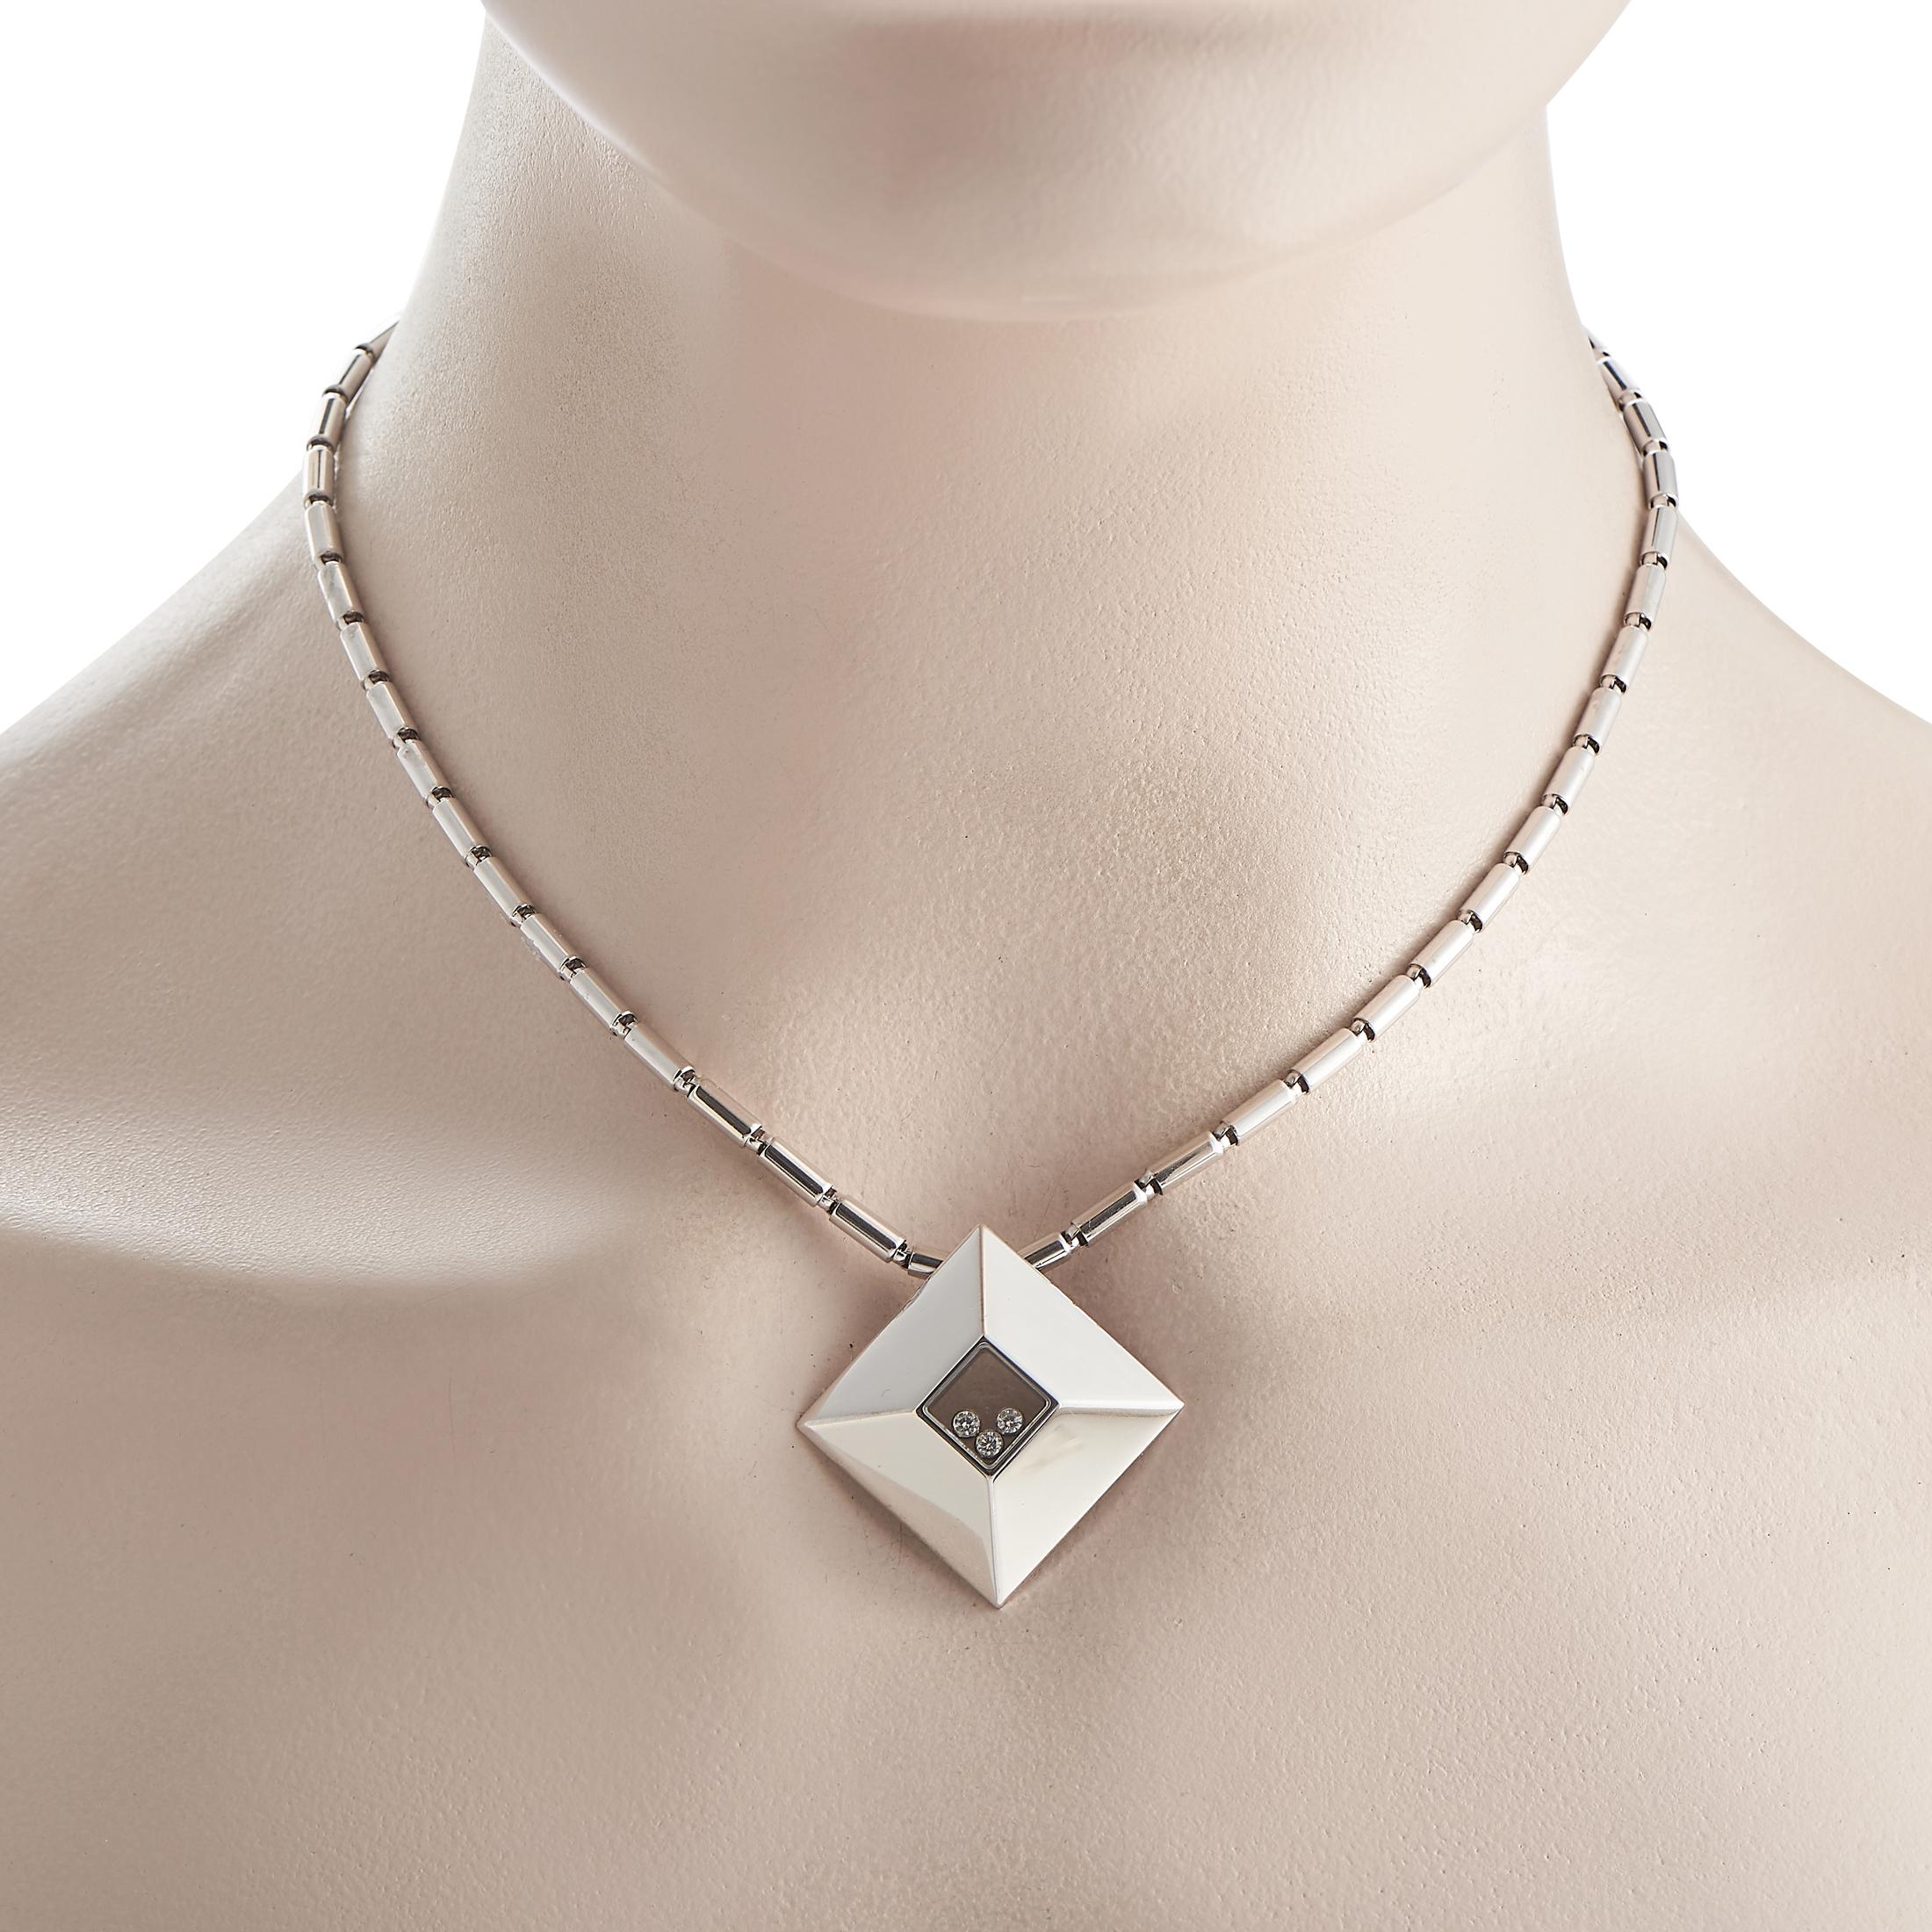 Création radieuse du joaillier et horloger suisse, ce collier Chopard de la collection Happy Diamonds promet d'offrir un éclat radieux à chacun de vos mouvements. Il se compose d'une chaîne de collier à barre tubulaire élégante qui porte un